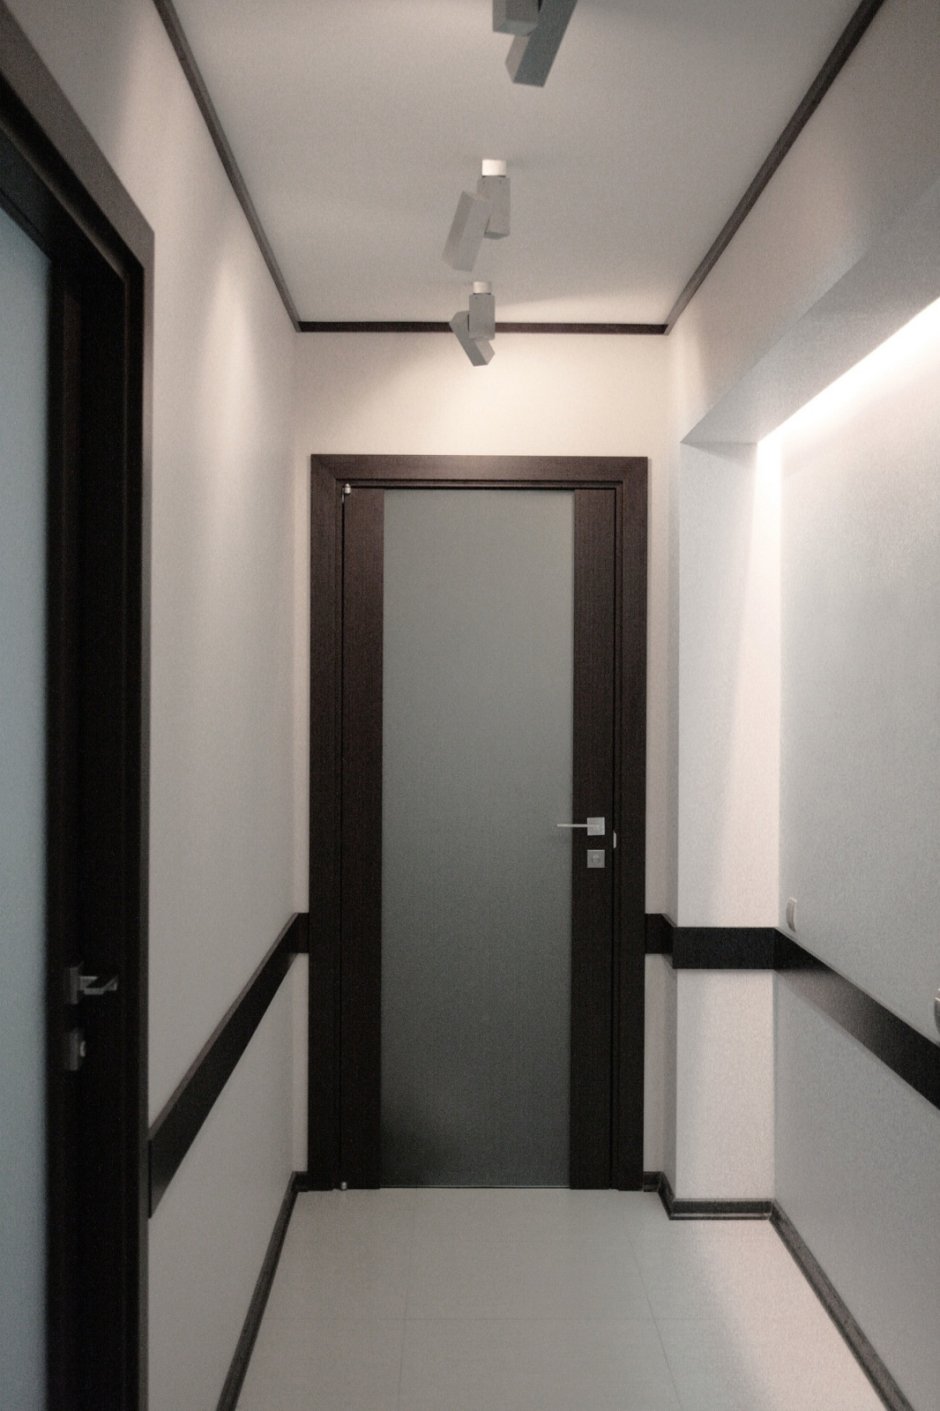 темные двери и светлый пол в интерьере квартиры